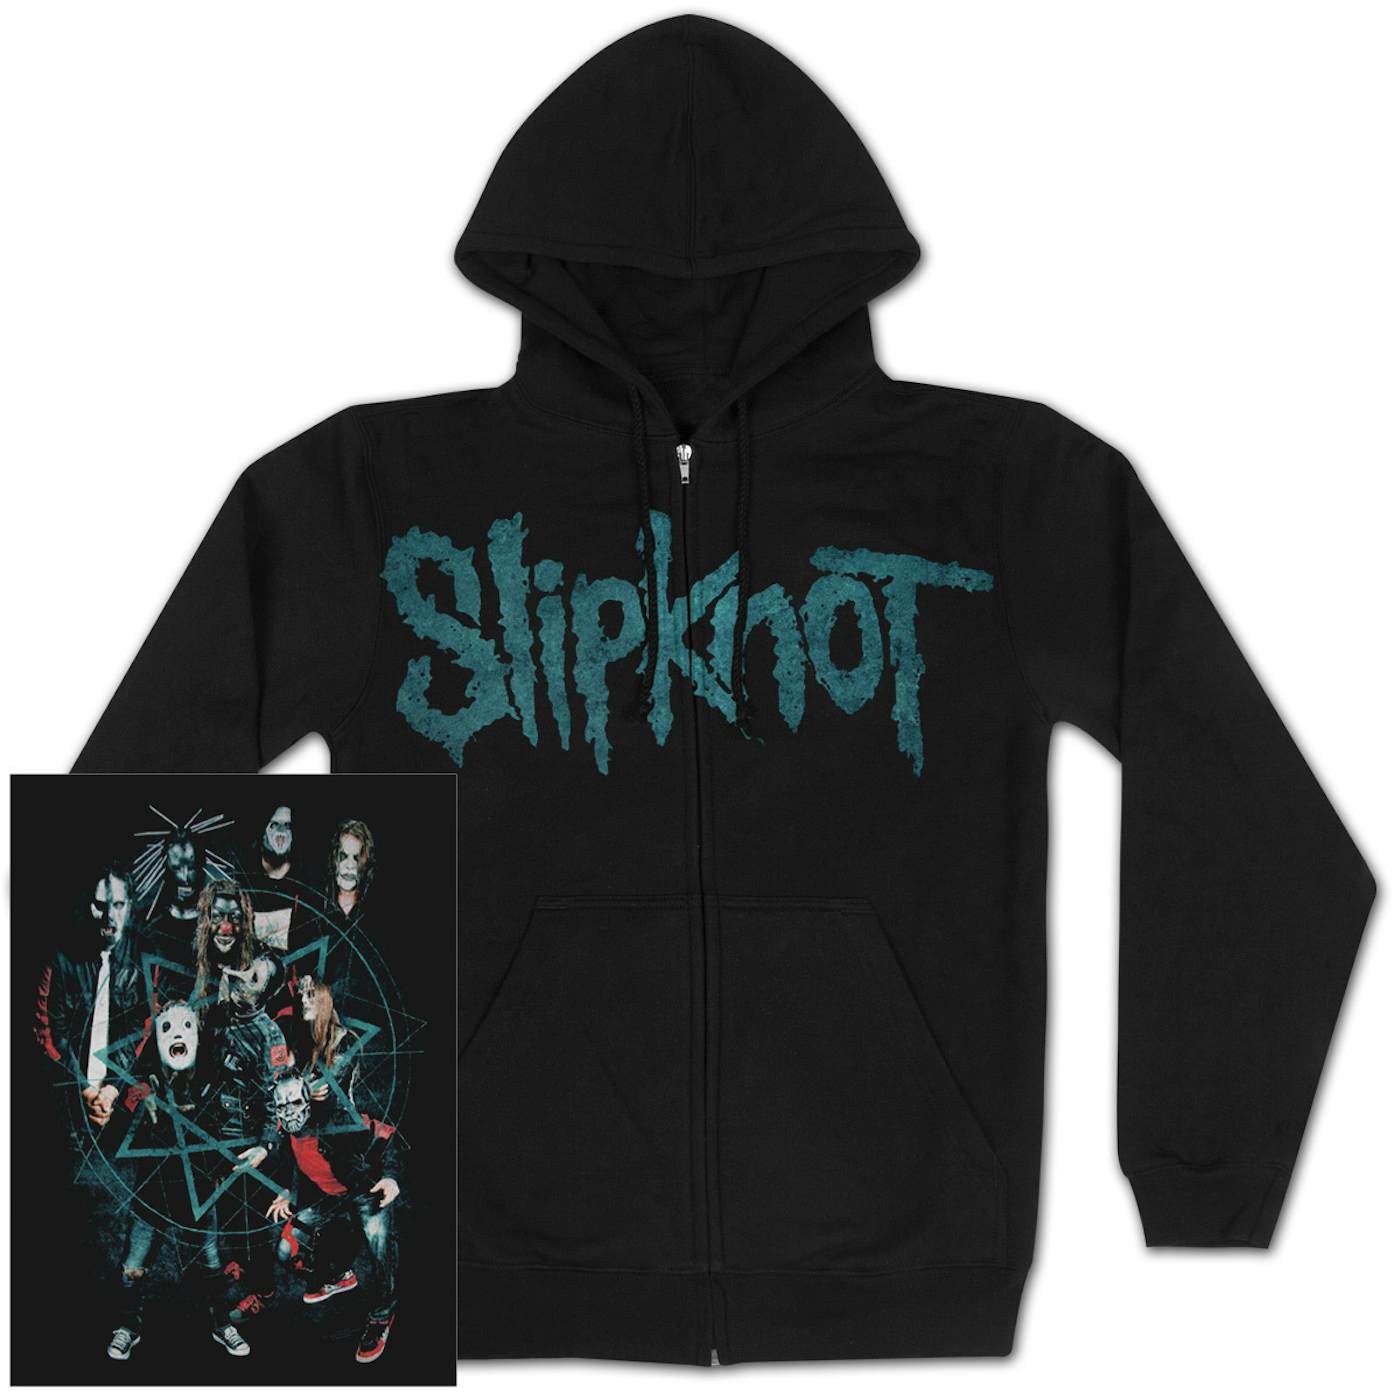 Slipknot Group Shot Hoodie